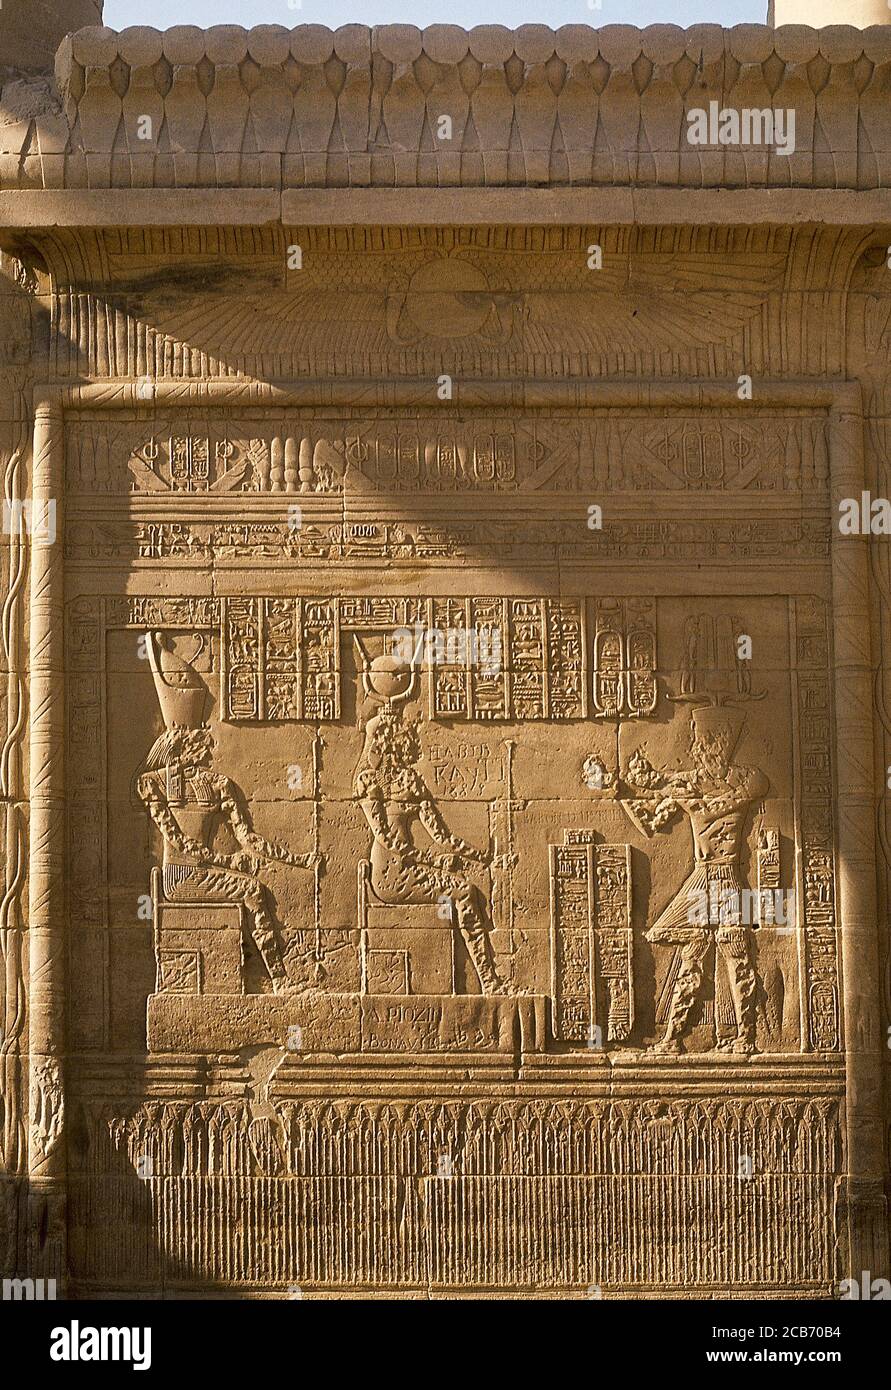 Égypte, Philae. Reliefs sur un mur du Temple d'Isis. Offrant la scène au dieu Horus (tête de faucon) et à la déesse Isis (plat solaire). Bande inférieure représentant les fleurs de lotus. Banque D'Images